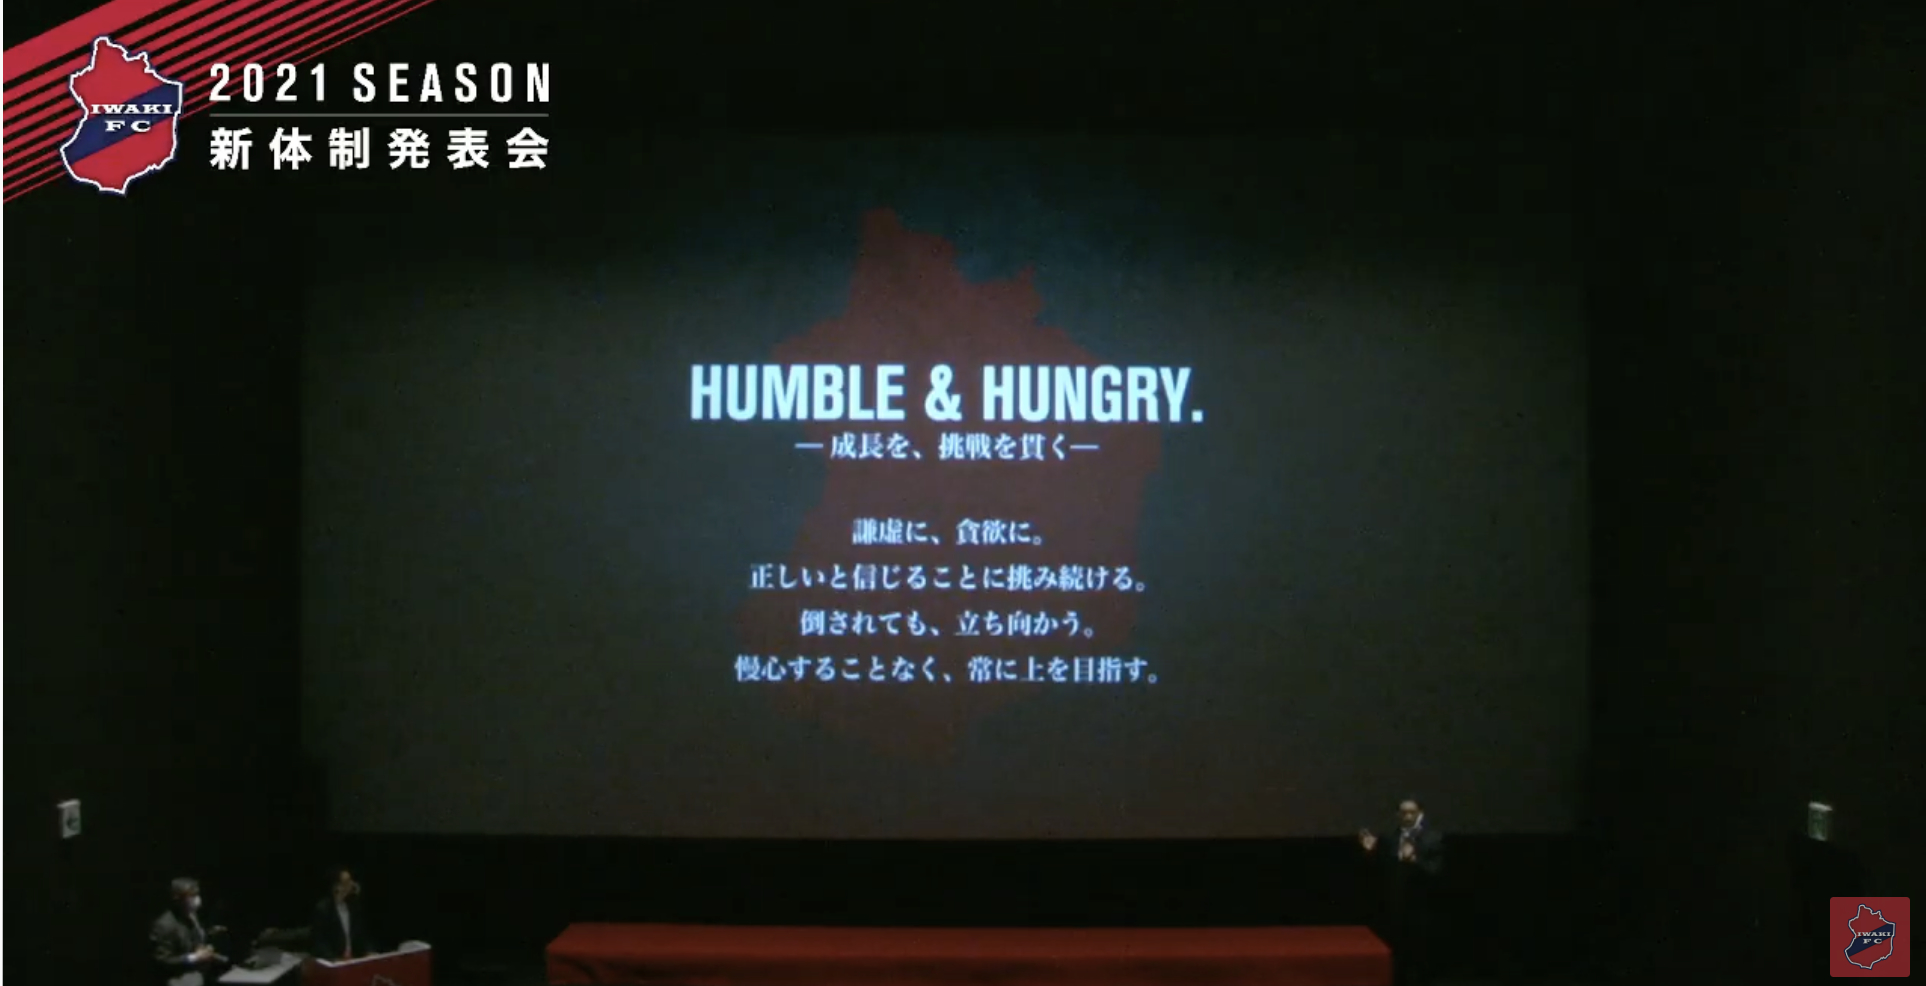 チームスローガン「HUMBLE & HUNGRY. －成長を、挑戦を貫く－」